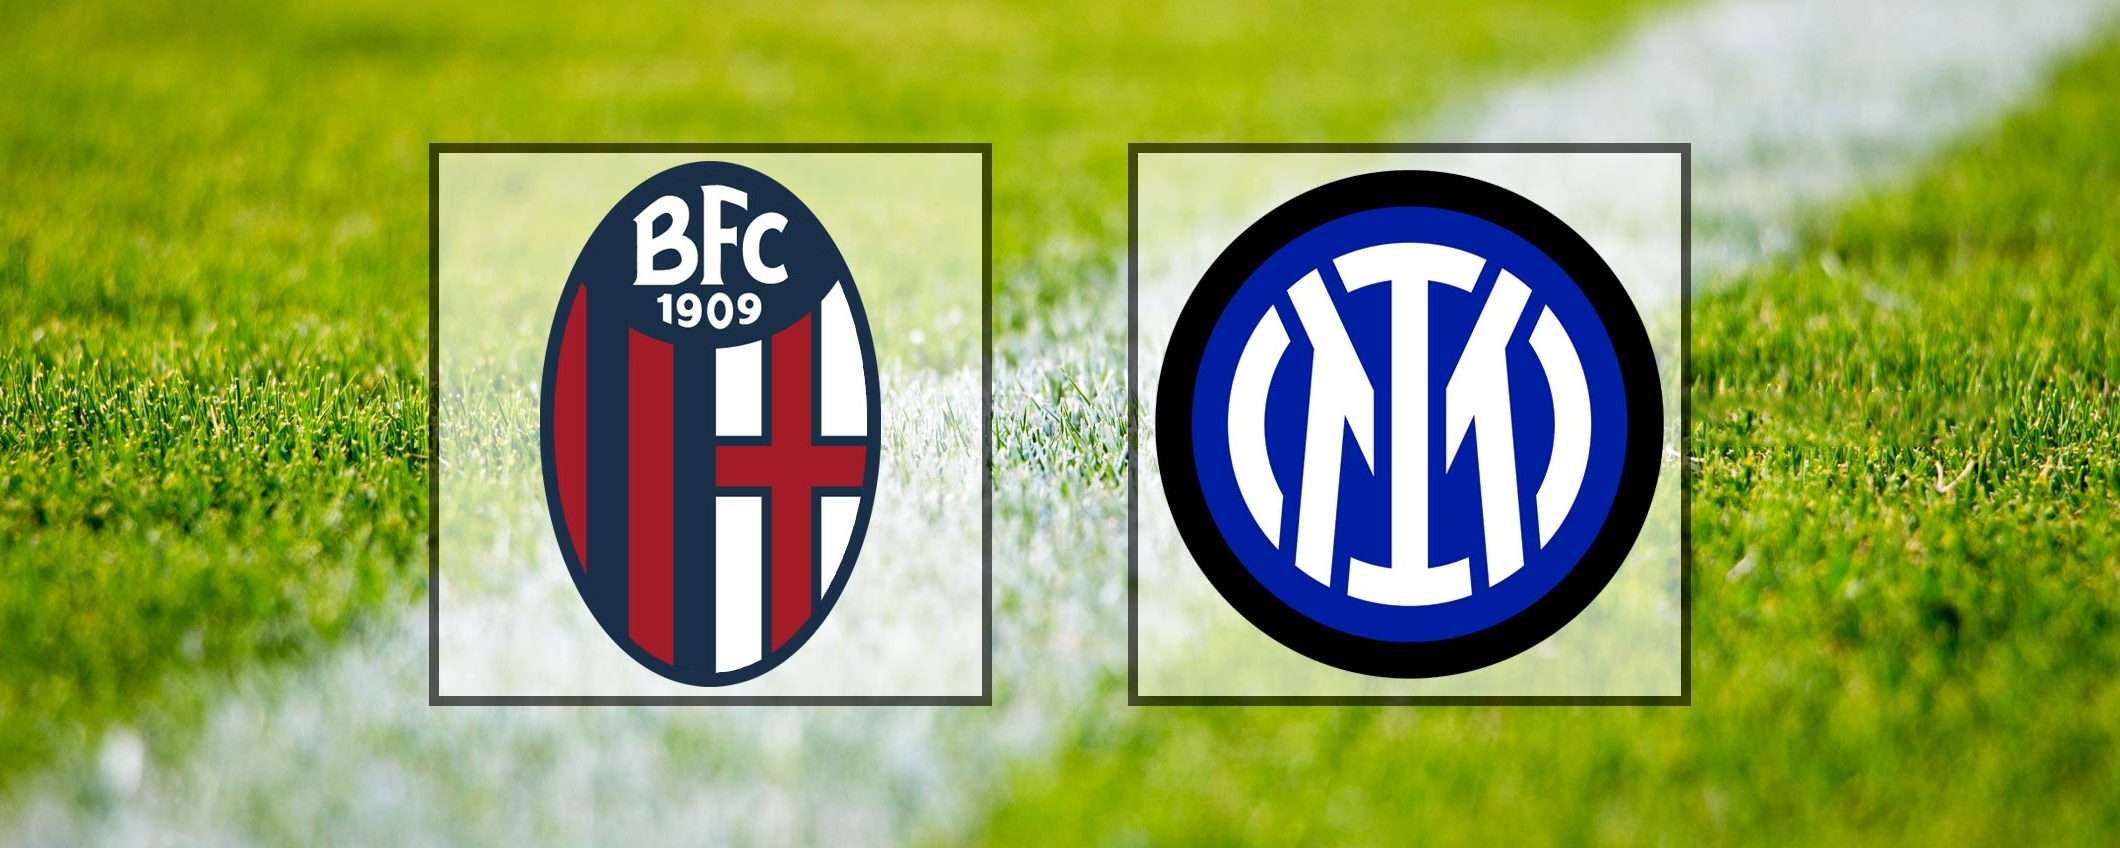 Come vedere Bologna-Inter in streaming